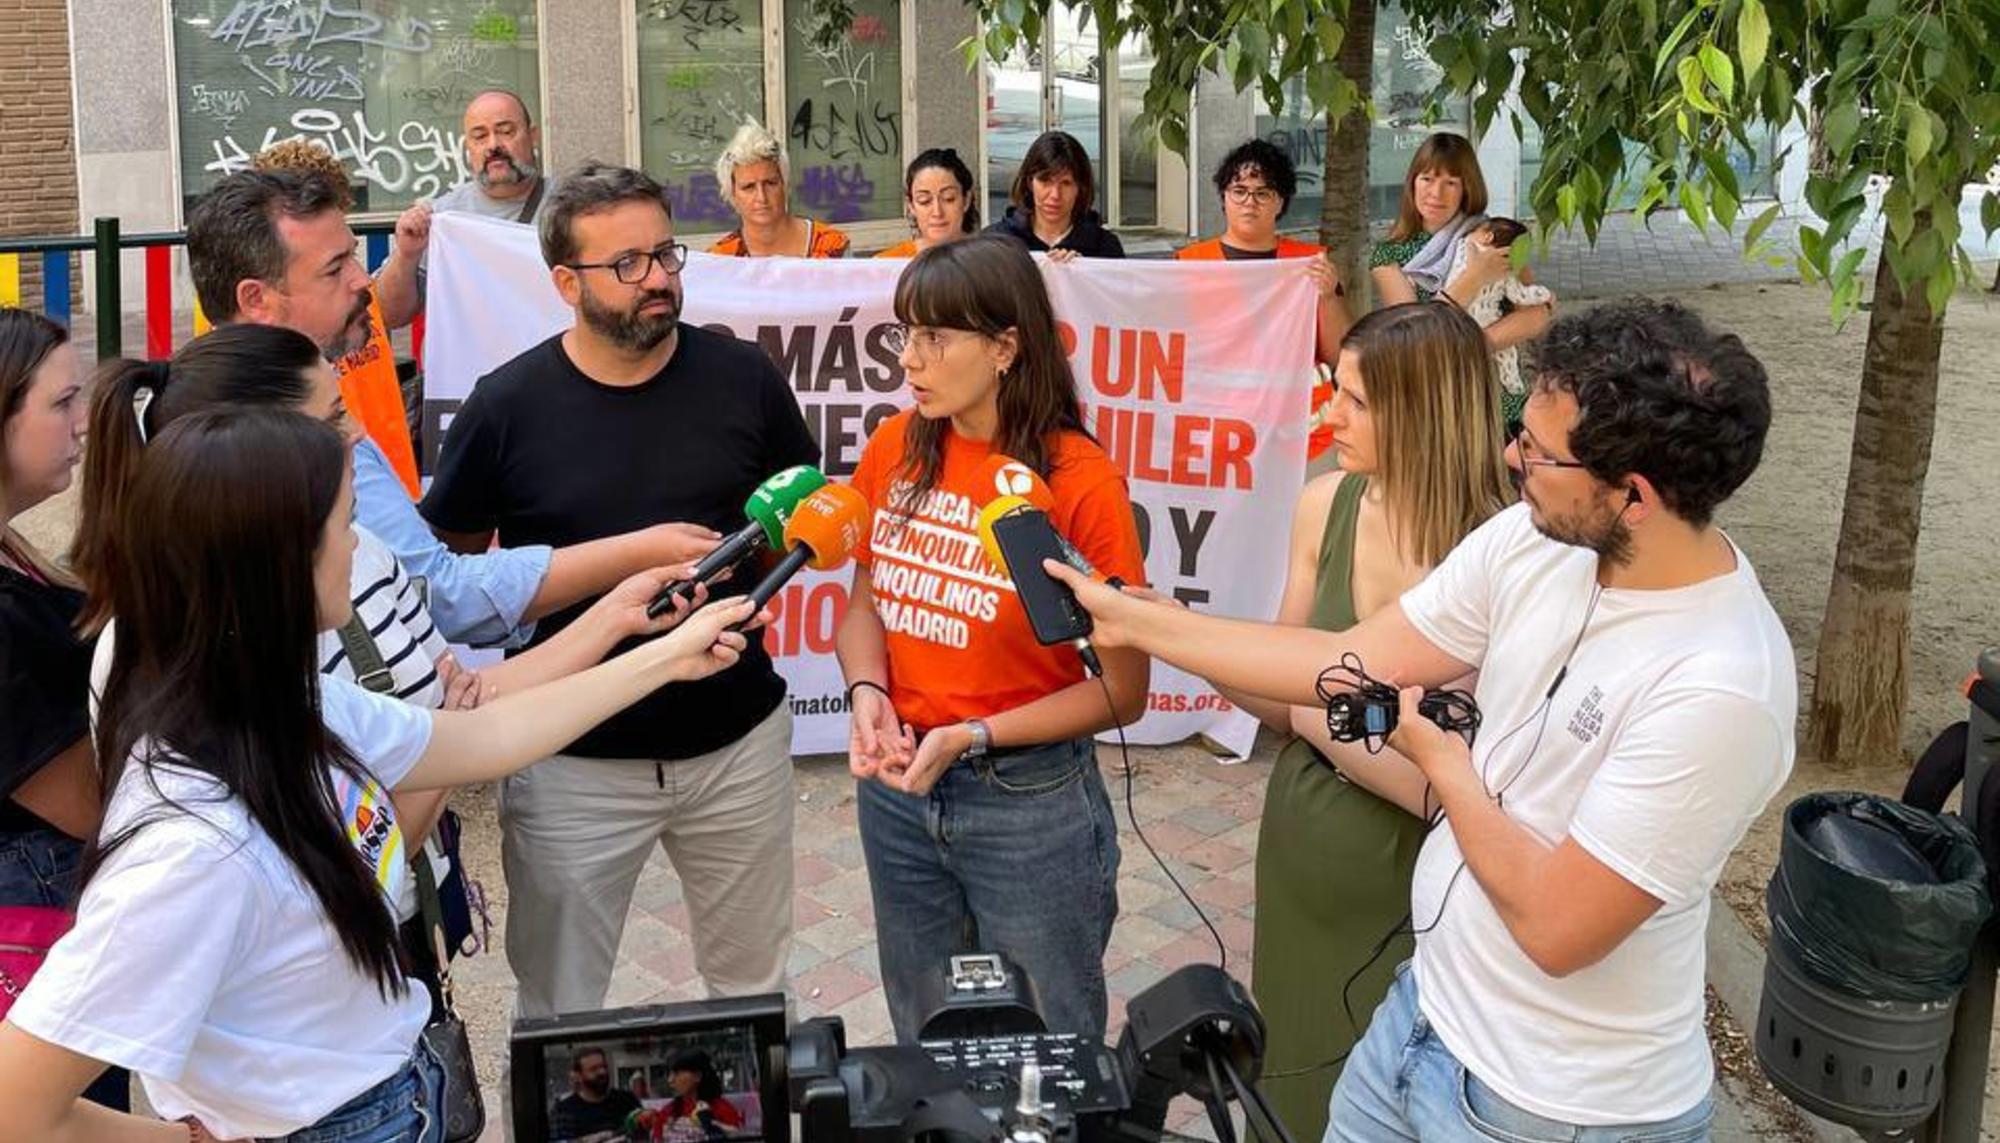 Rueda de prensa de los tres bloques en lucha afectados por las subidas abusivas del alquiler. Foto: Sindicato de Inquilinas de Madrid